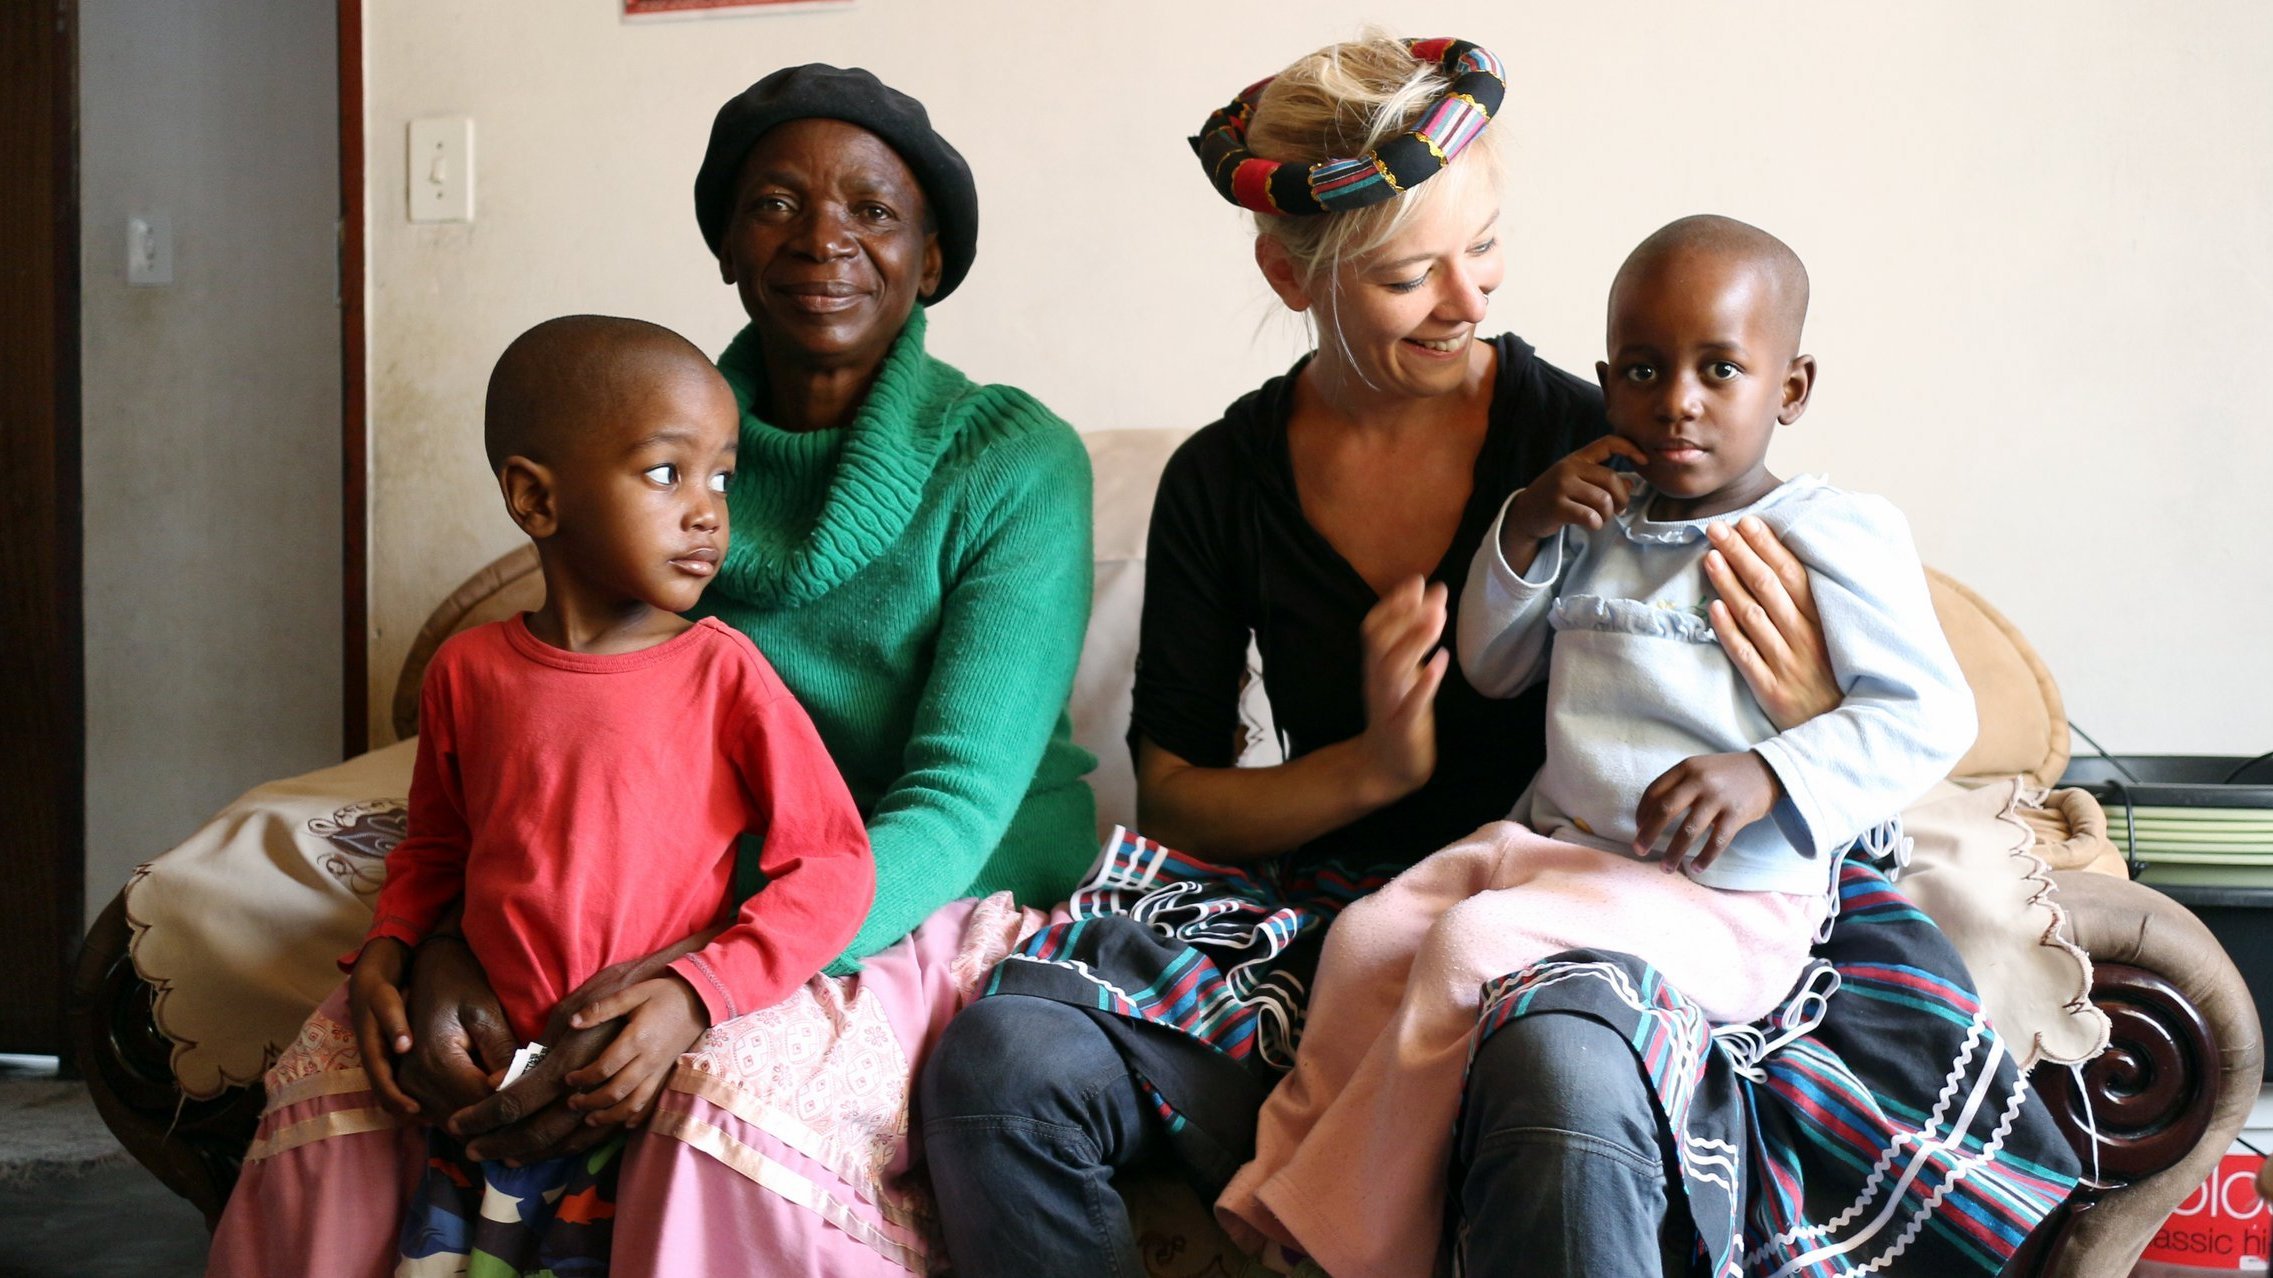 Wiedersehen in Südafrika nach zwölf Jahren: Britta Hüning 2013 bei Familie Ngoma in Lulekani, wo Britta 2001 ihr Praxissemester absolviert hatte. (Foto: privat)